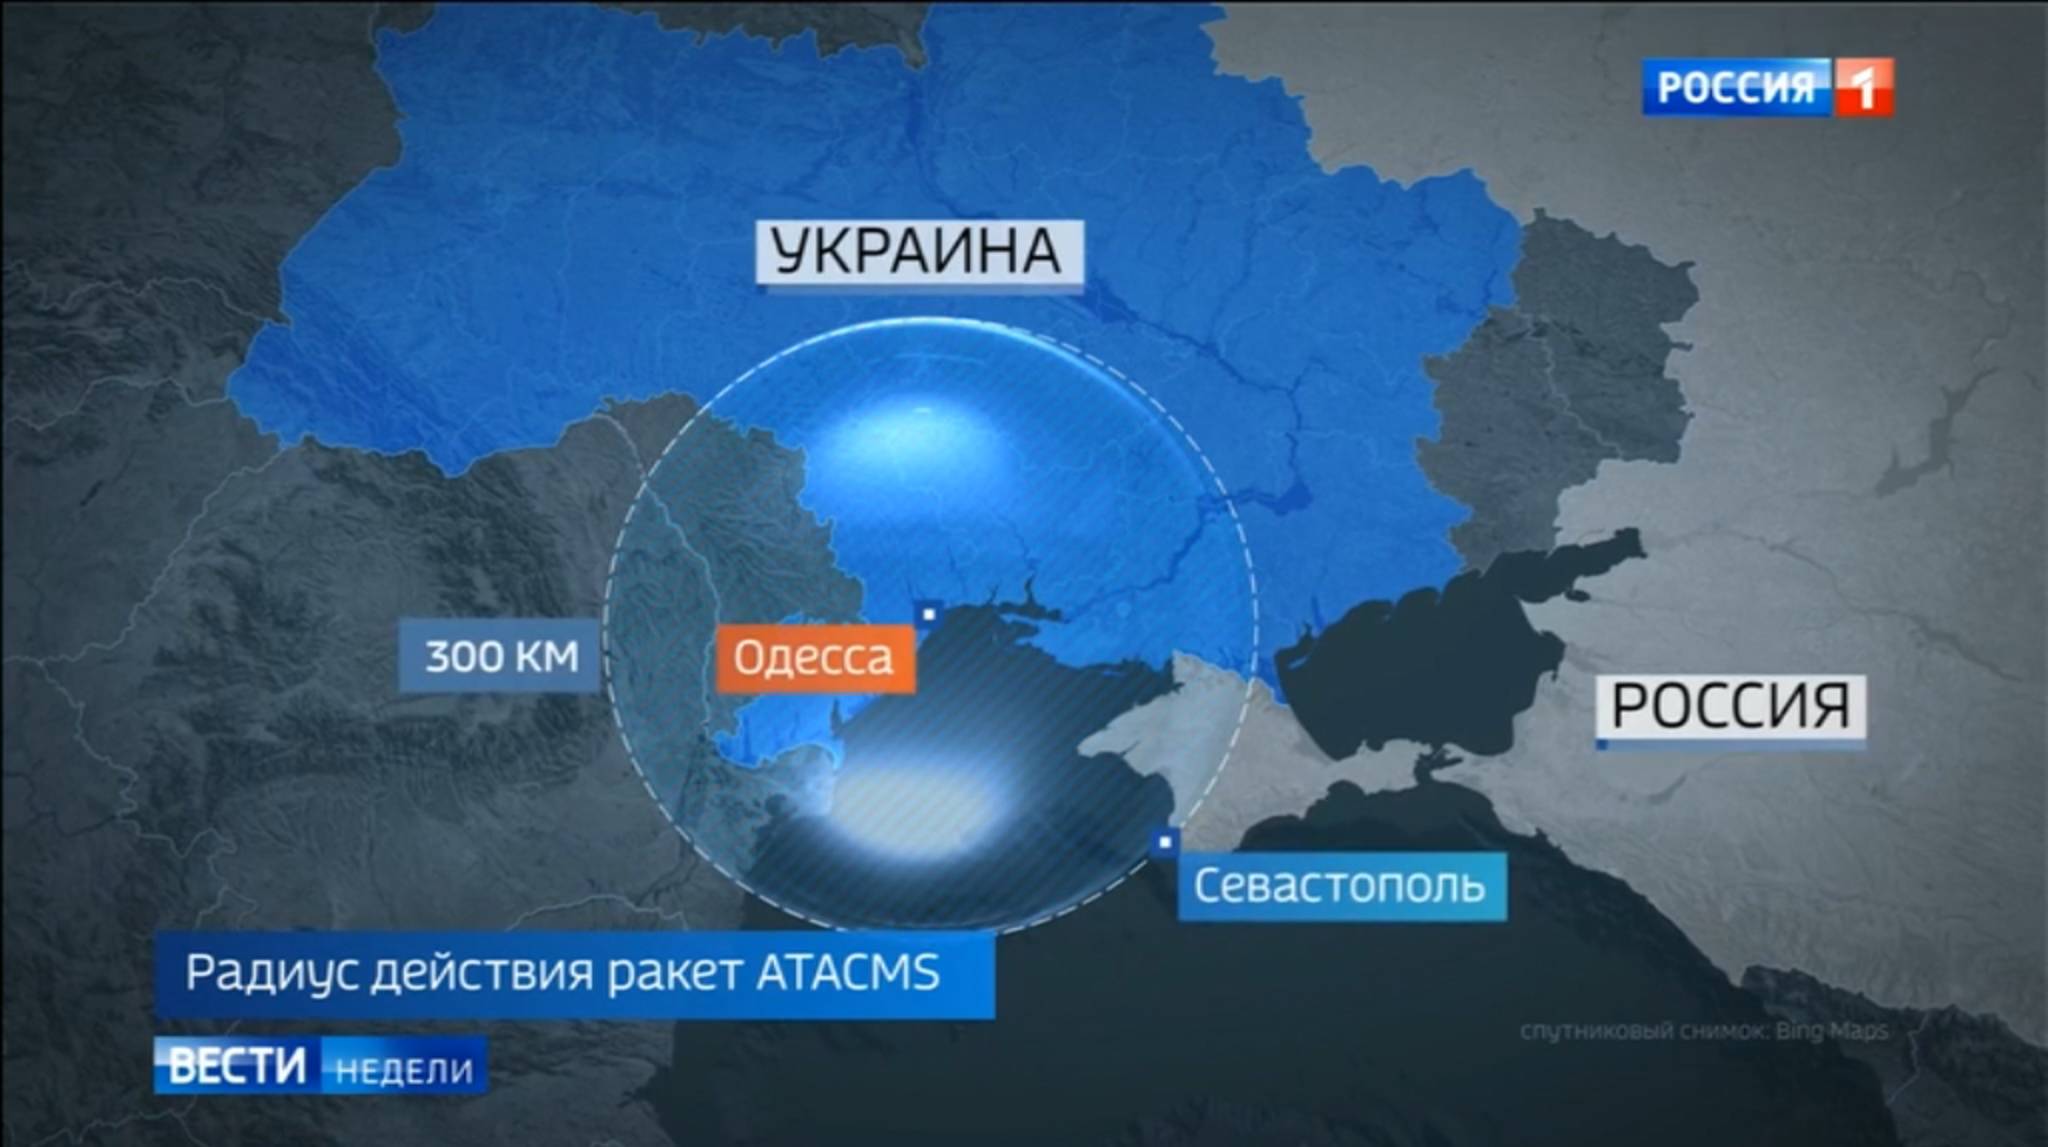 Mapka Ukrainy pokazująca, że pocisk o zasięgu 300 km wystrzelony z Odessy może dotrzeć do bazy na okupowanym przez Rosję Sewastopolu